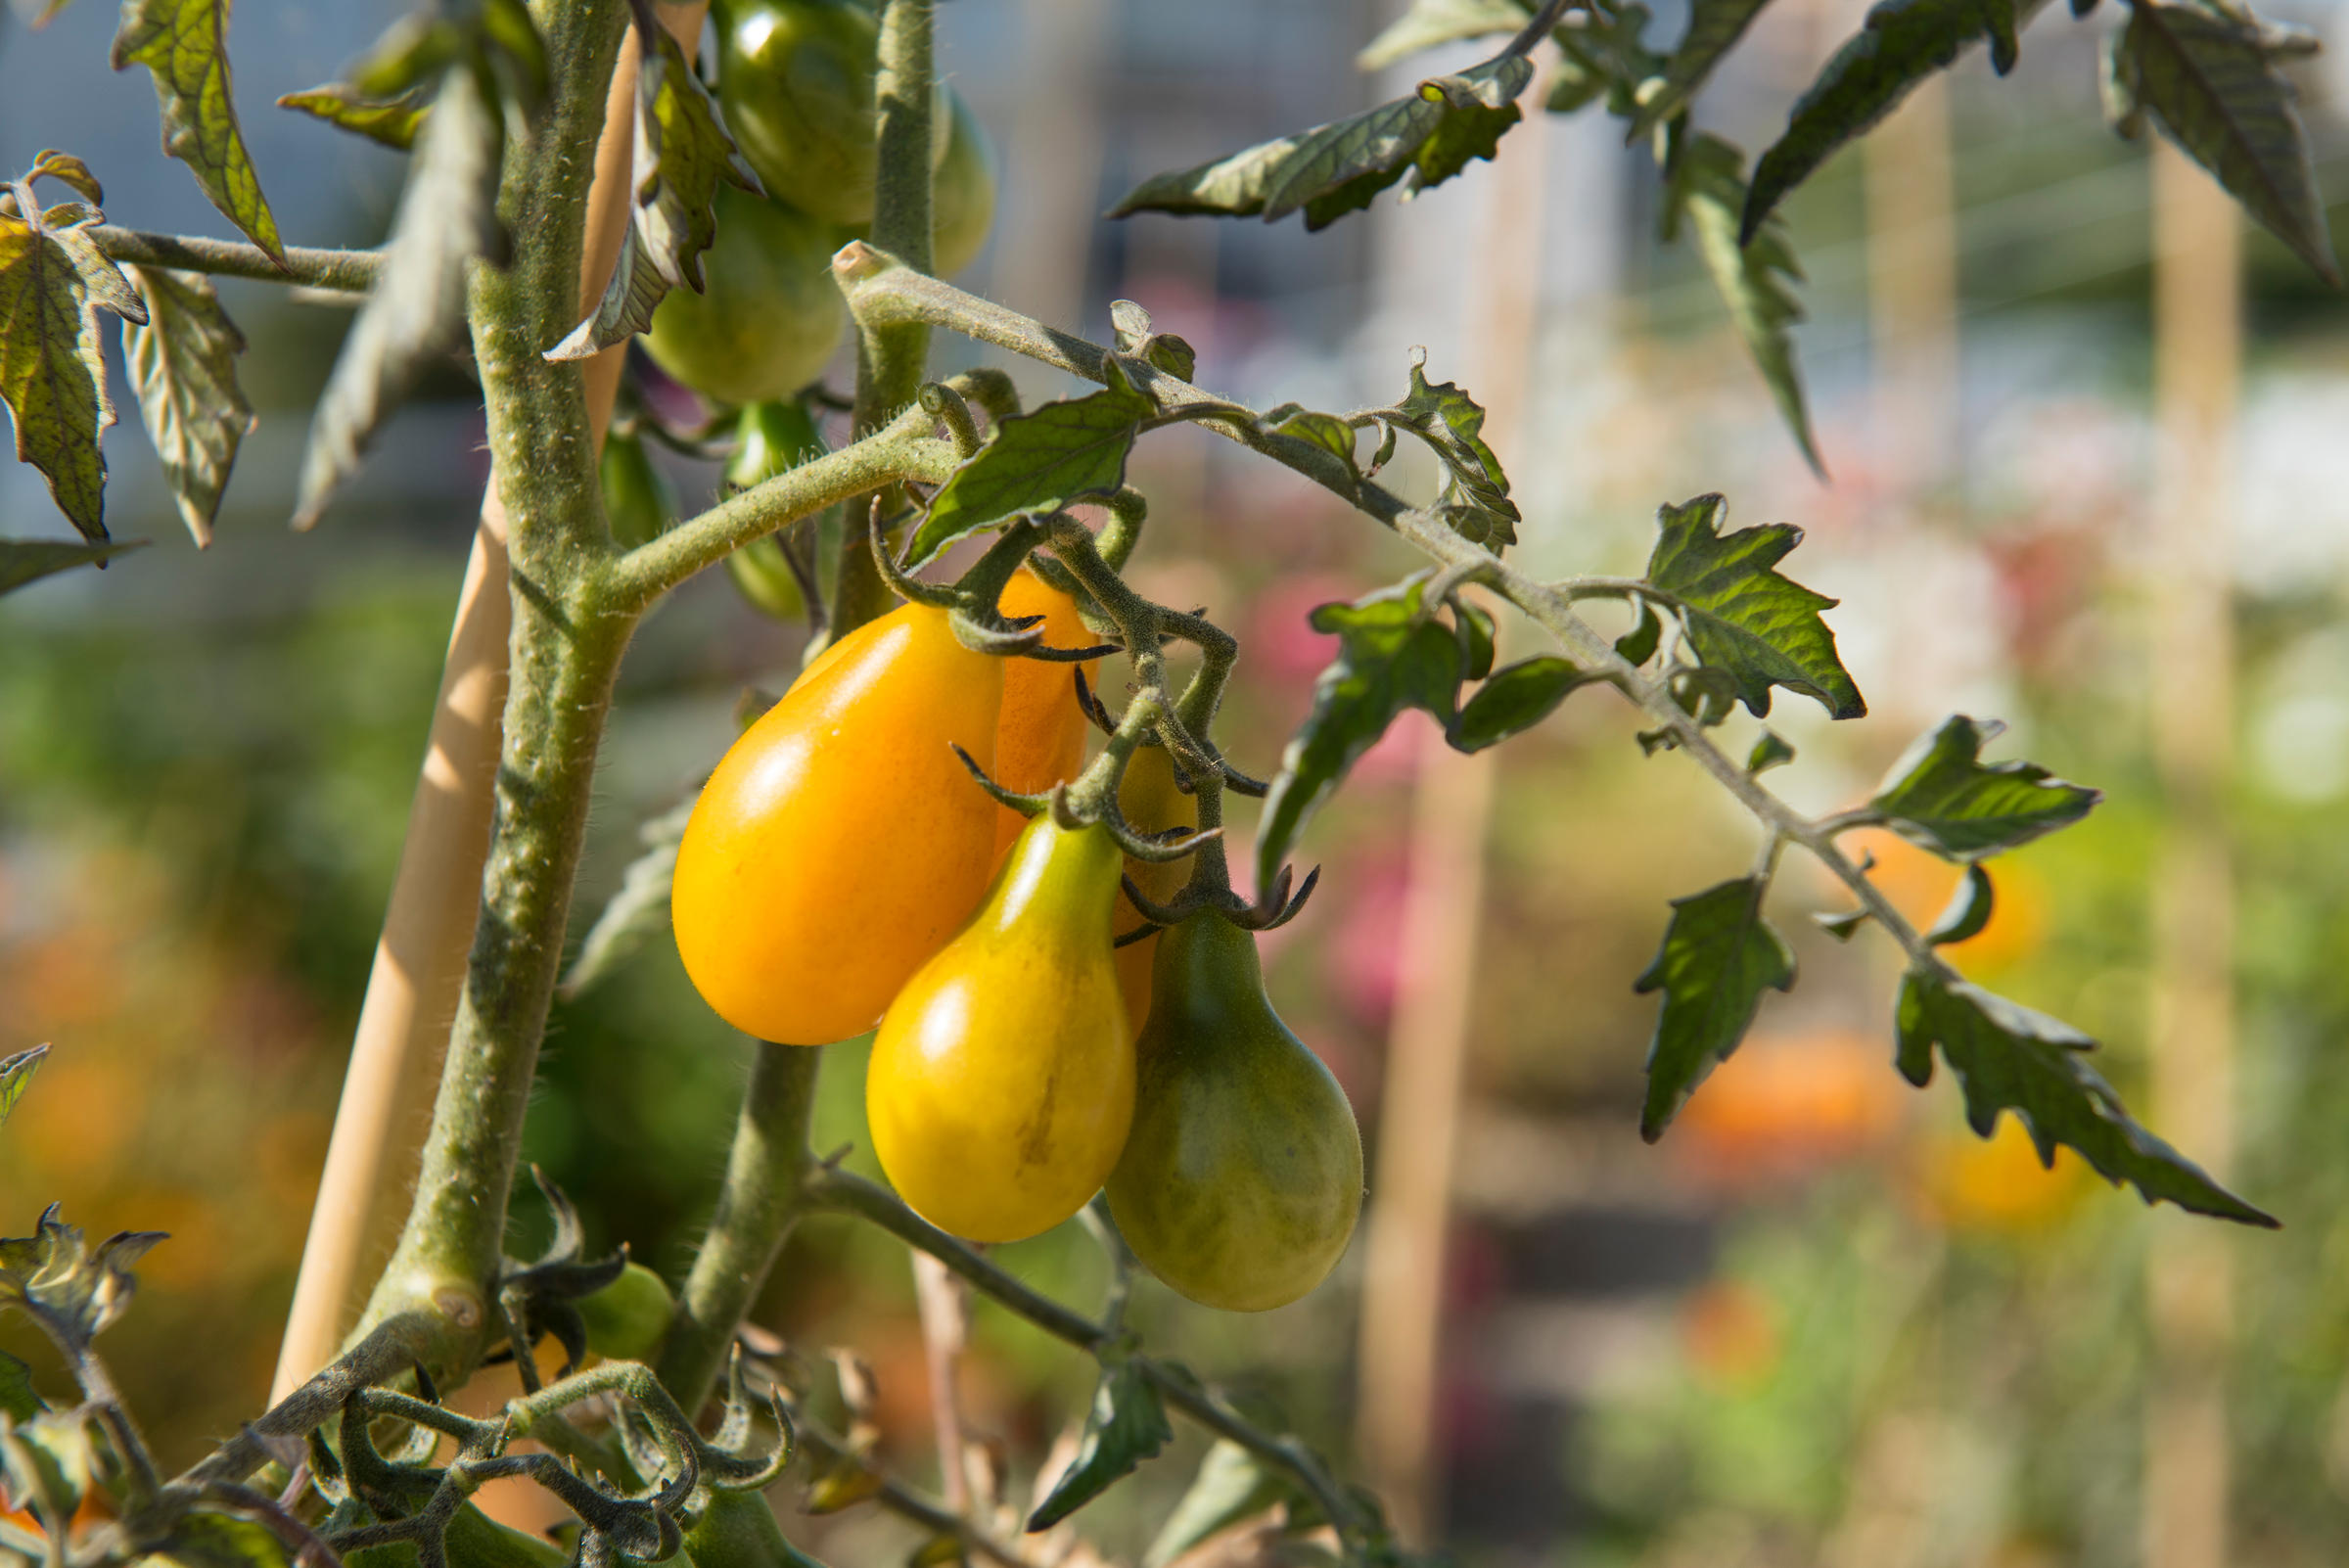 L'Arche végétale - la ferme urbaine, détail des tomates poires